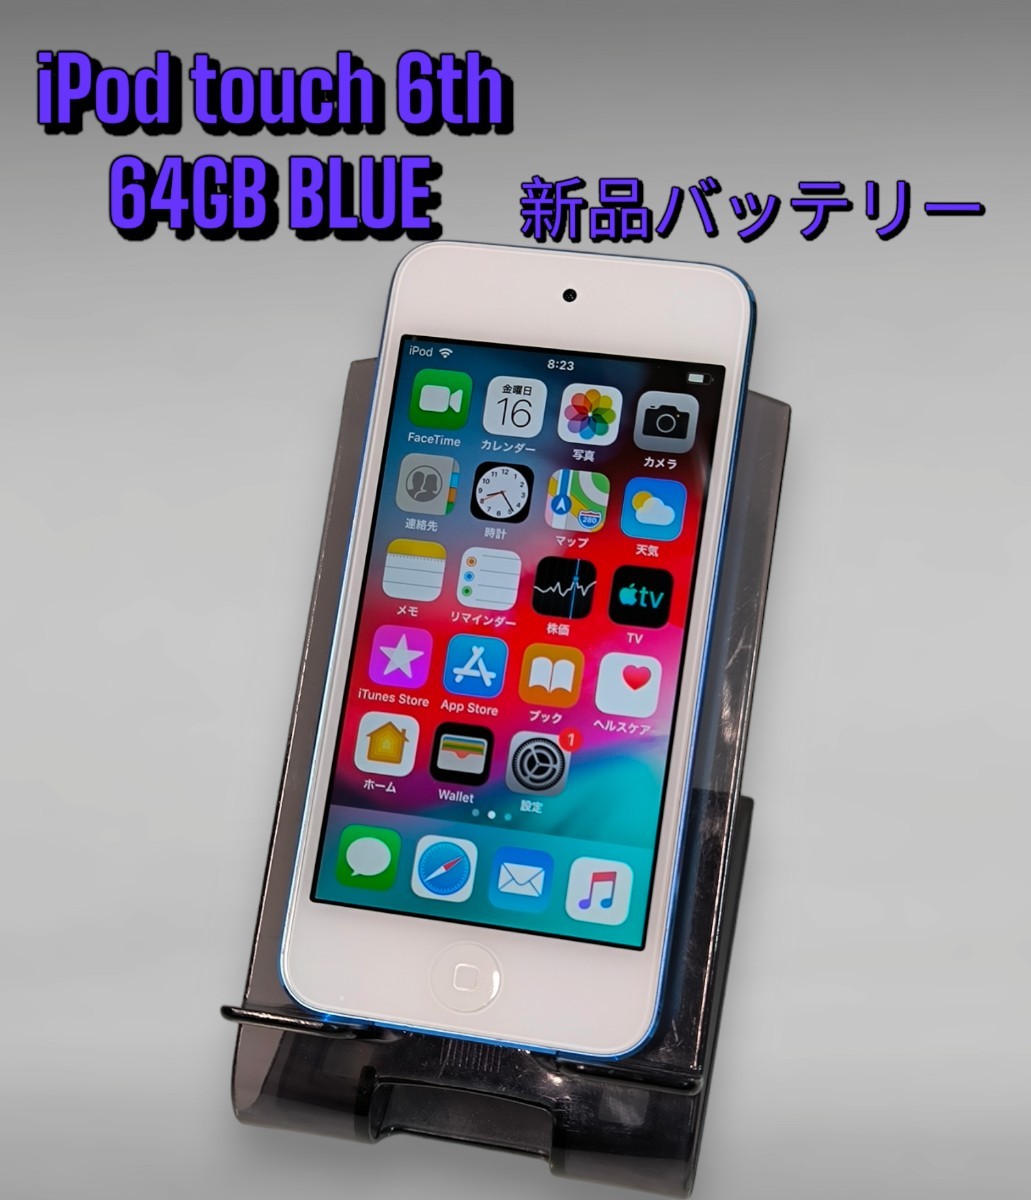 Apple iPod touch ブルー 64GB 第6世代 新品バッテリー交換済み MKHJ2